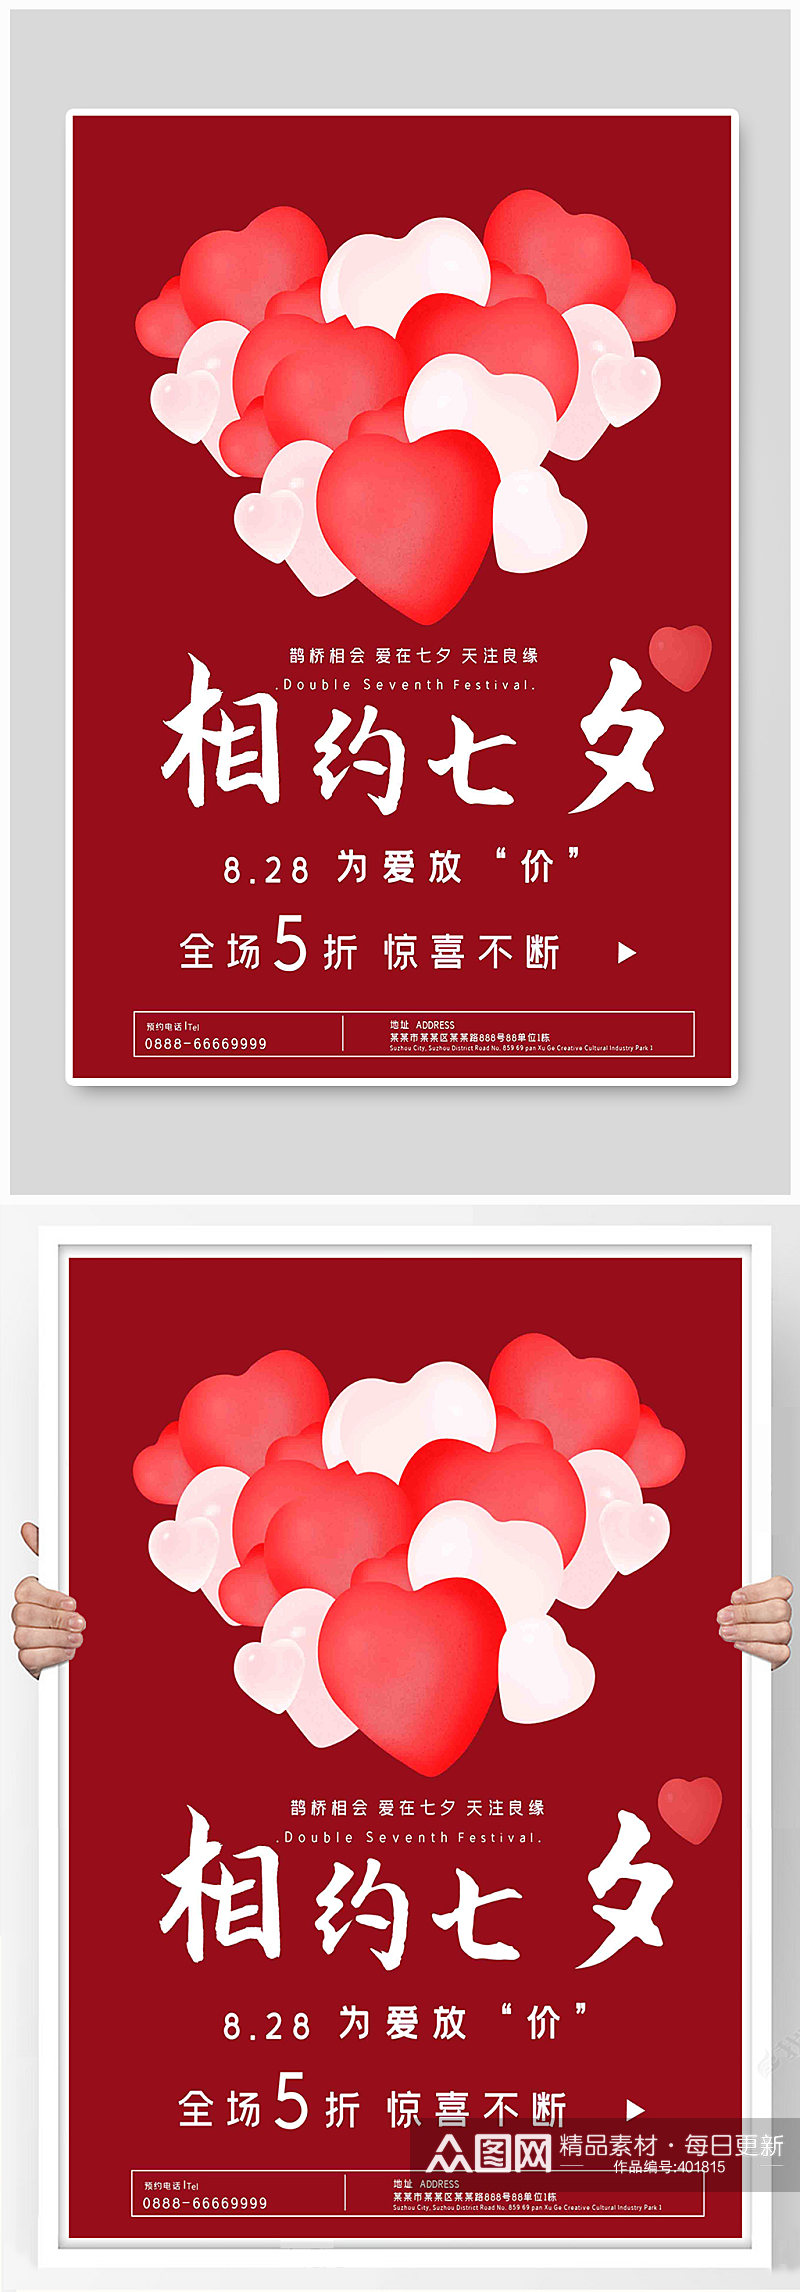 中国风相约七夕宣传海报素材